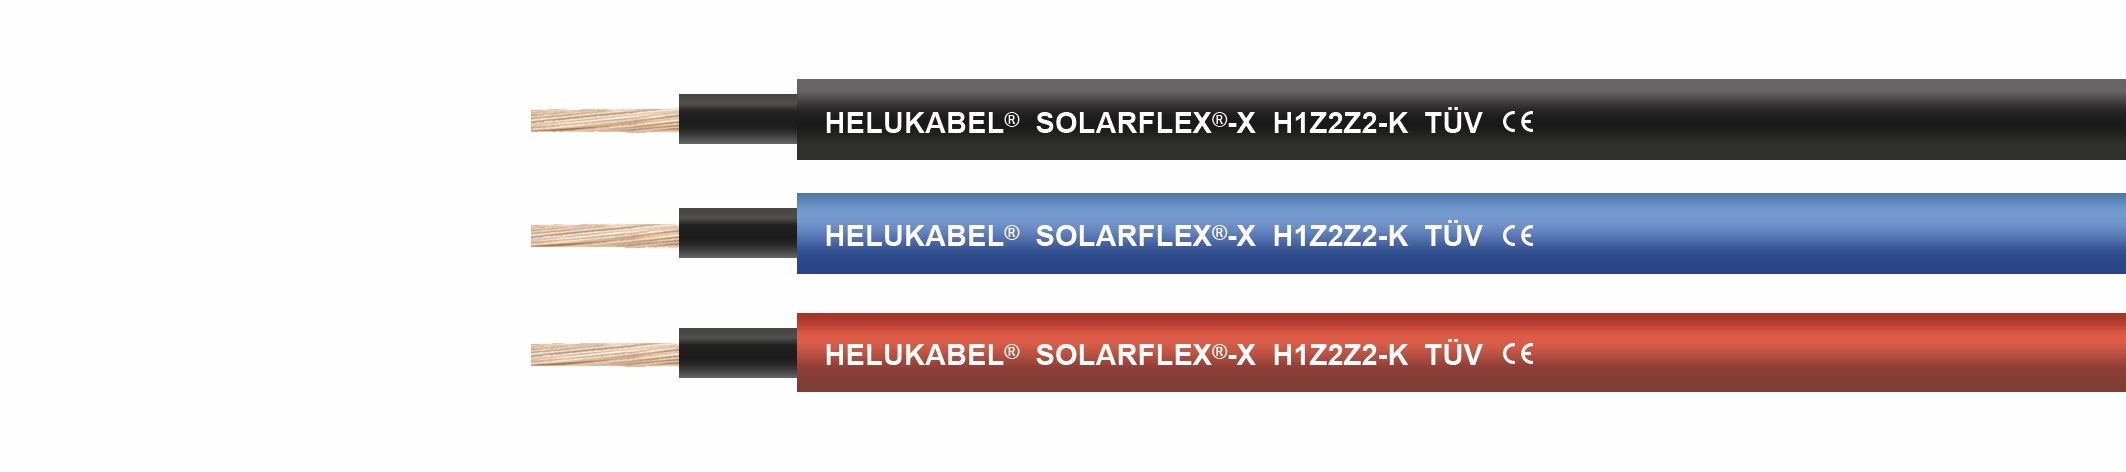 Cable Helukabel: SOLARFLEX®-X H1Z2Z2-K